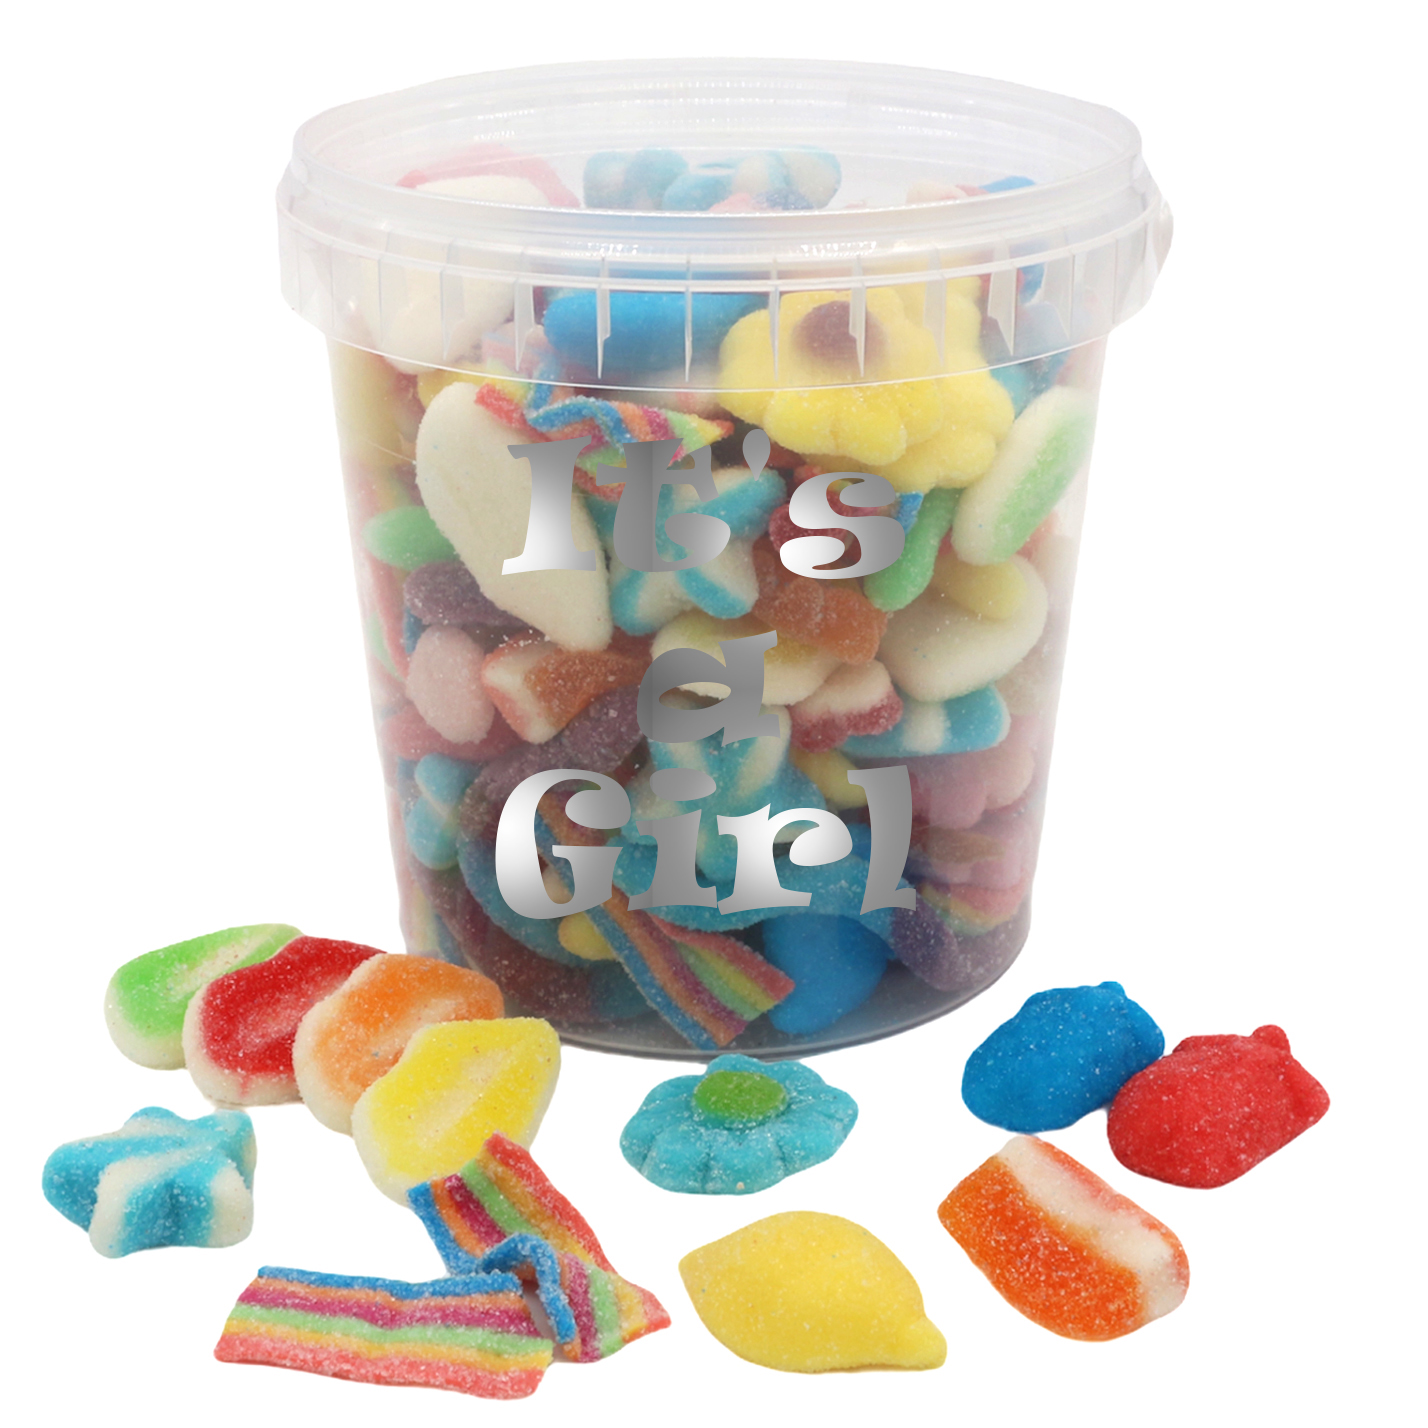 HALAL Pick 'n' Mix Sweets500g or 1kg Bag of Sweets - Etsy